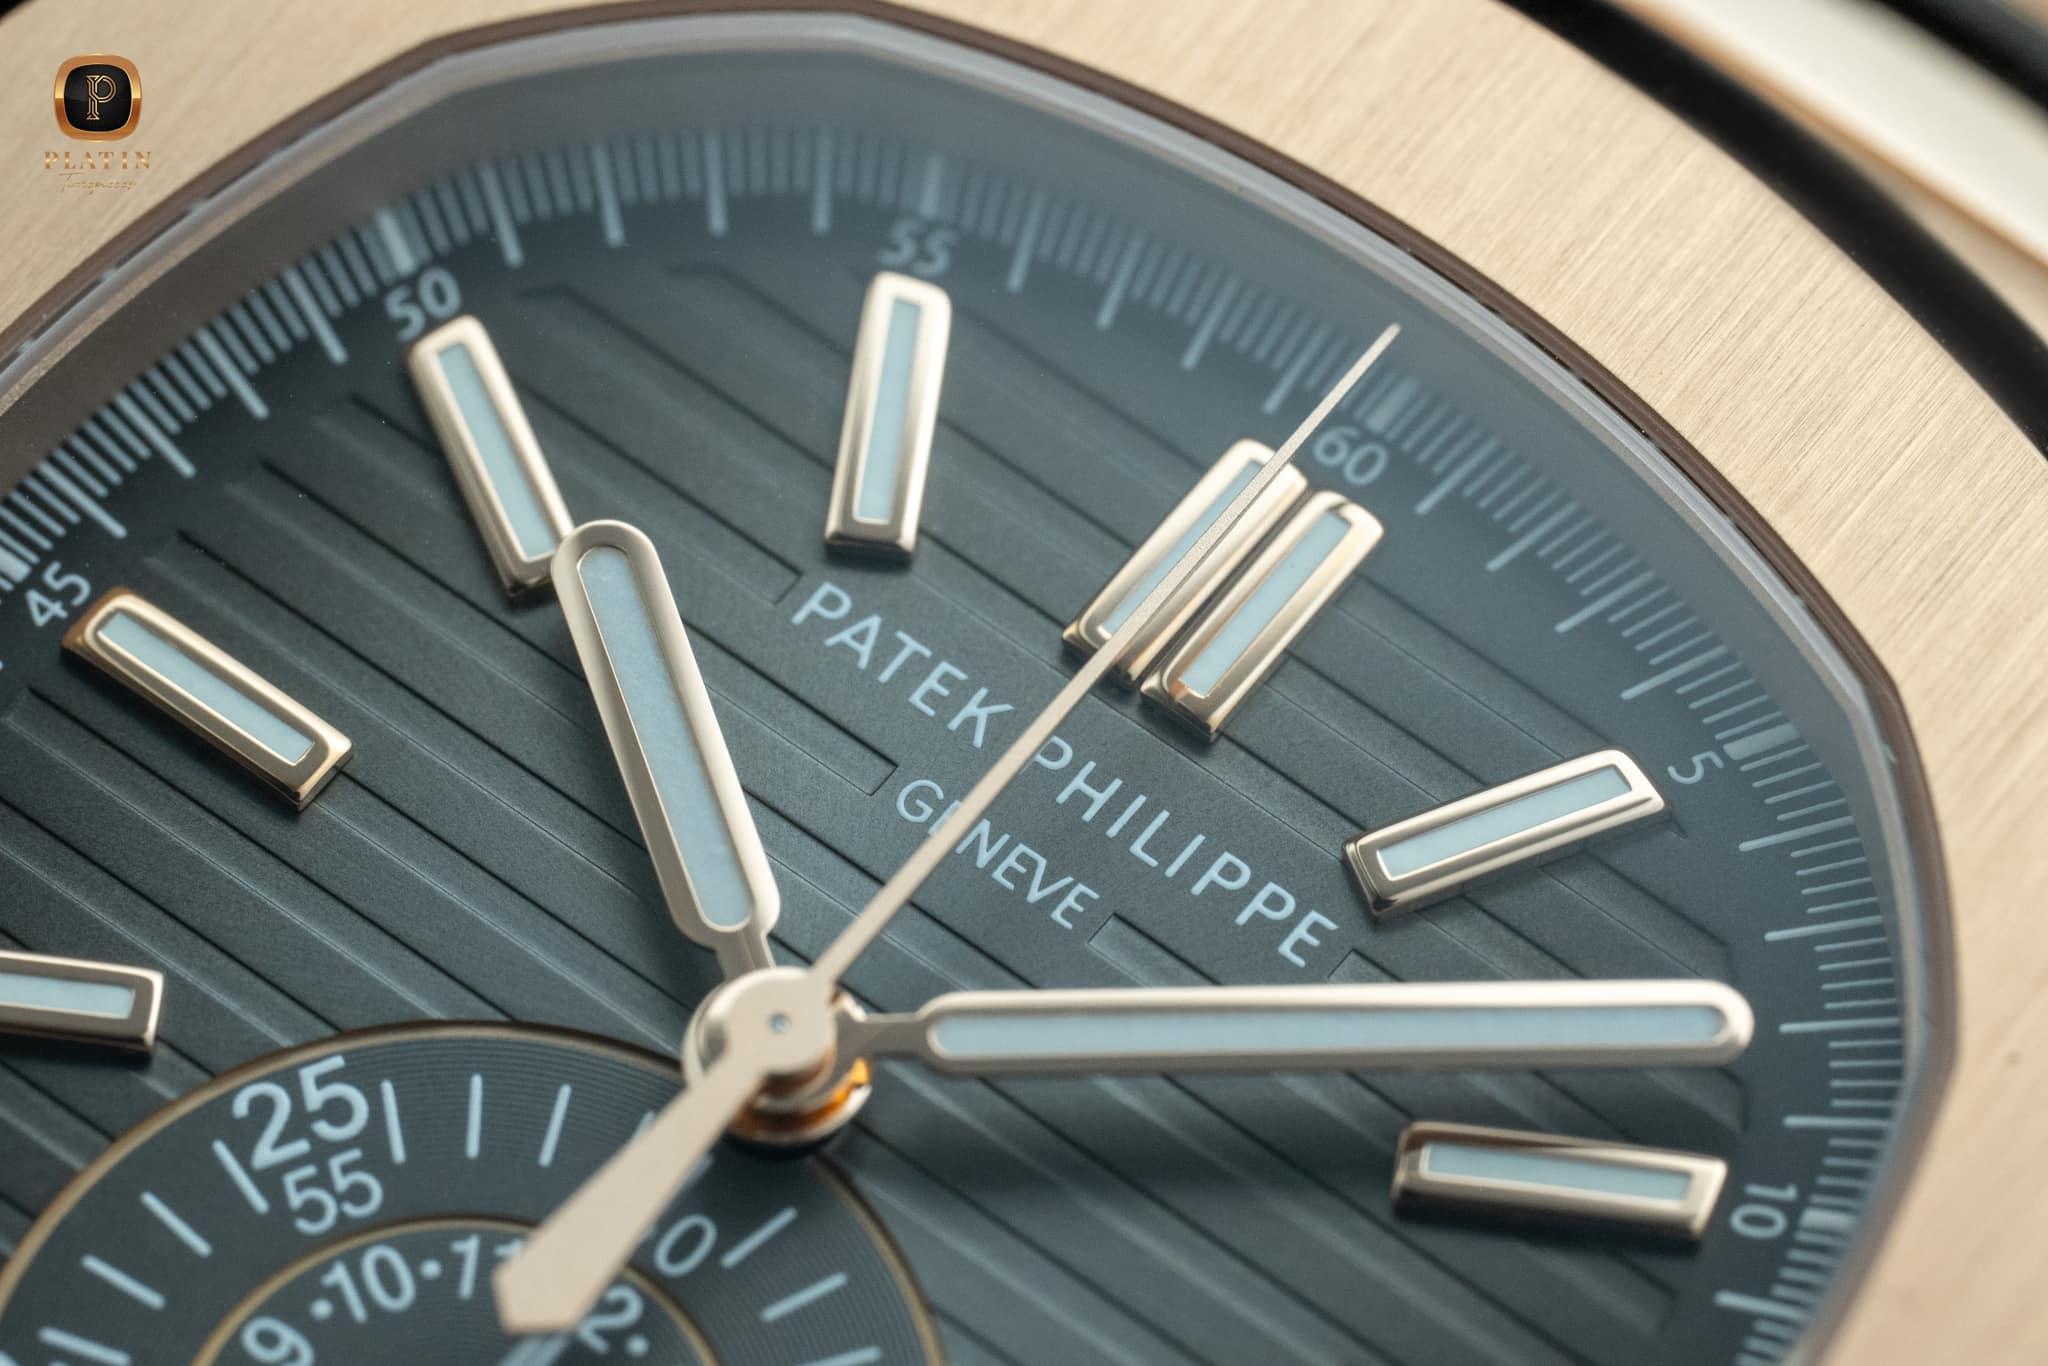 Đồng hồ Patek Philippe Nautilus 5980-1R-001